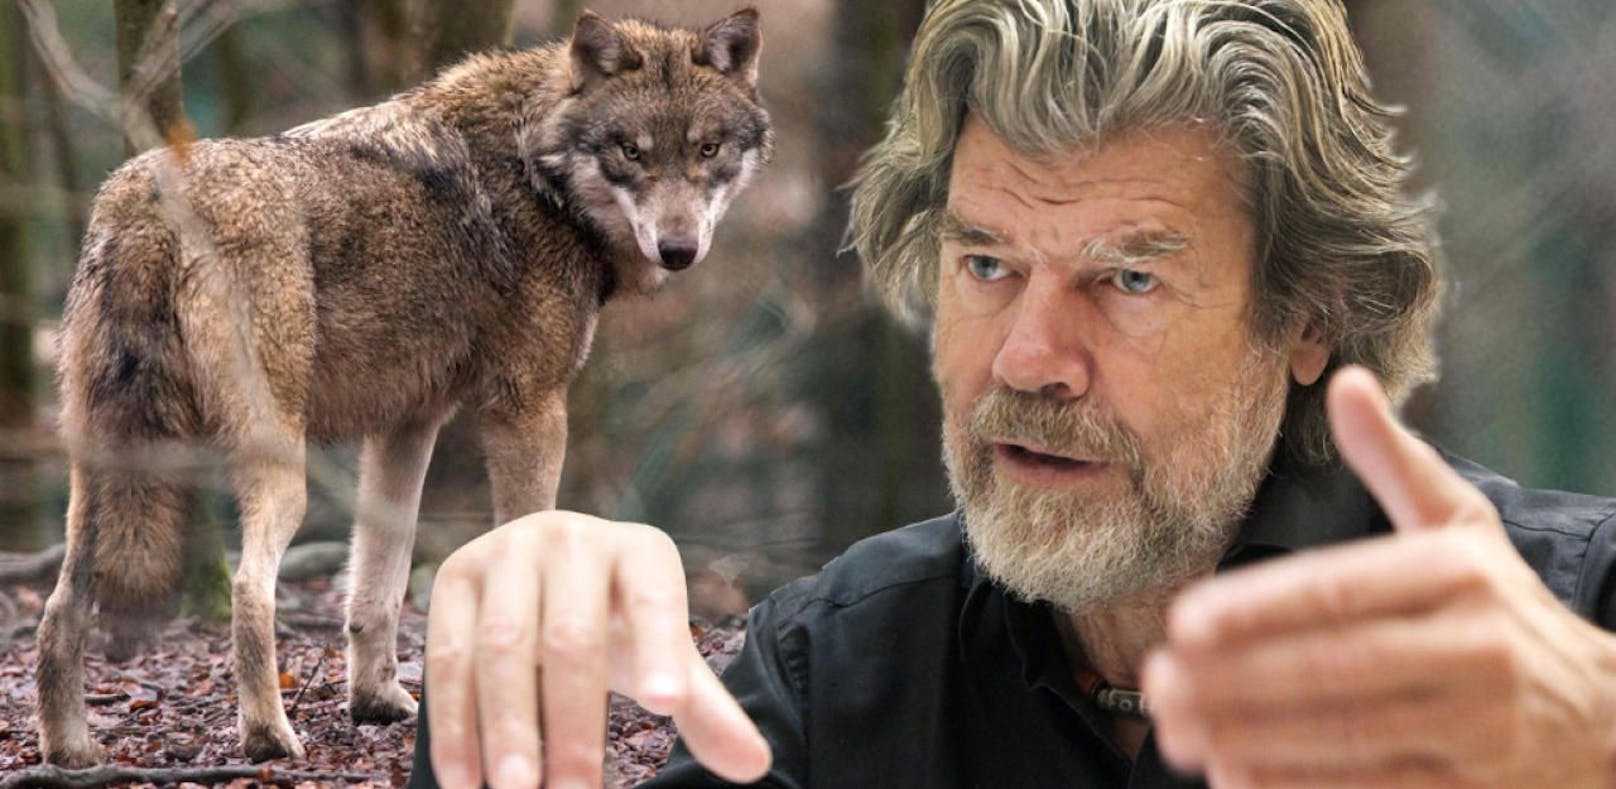 Wölfe seien in Sibirien besser aufgehoben, als in Mitteleuropa, findet Reinhold Messner.